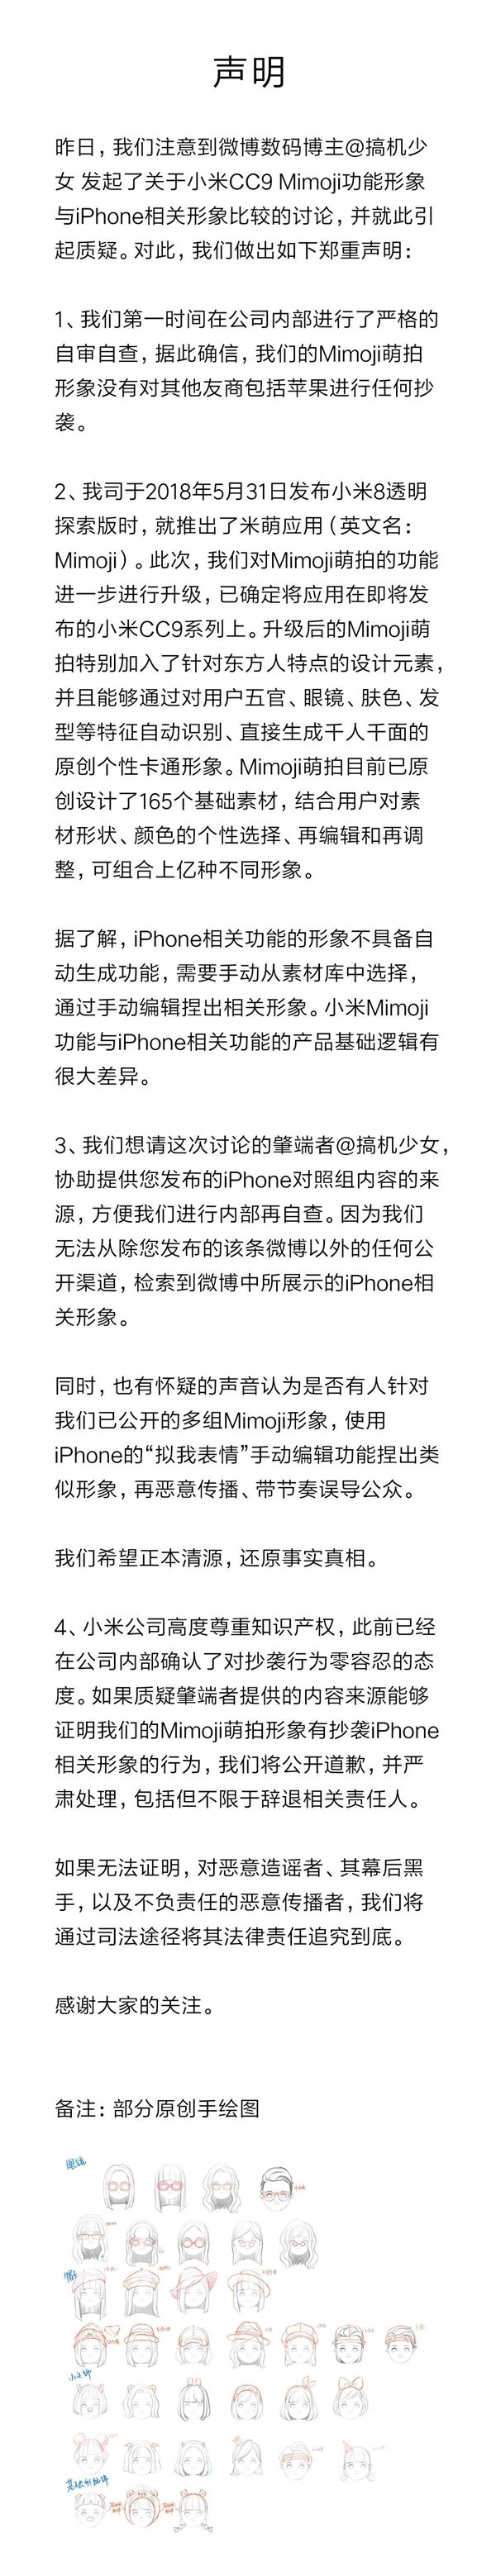 从今天起微信可直接办理ETC；官方：小米CC9 Mimoji萌拍没有抄袭iPhone 智能公会